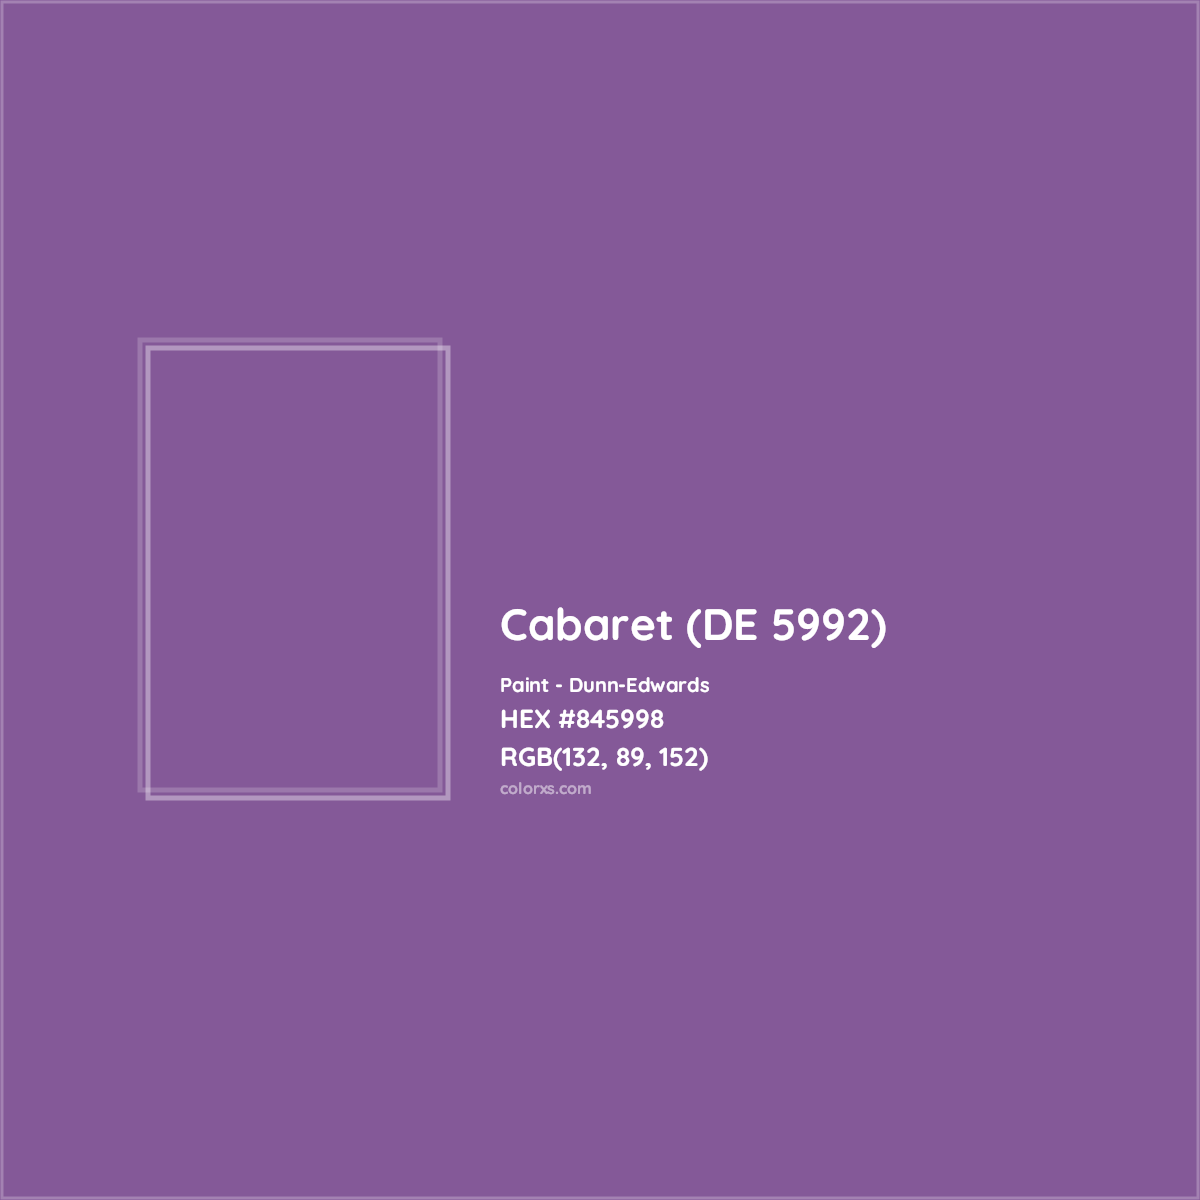 HEX #845998 Cabaret (DE 5992) Paint Dunn-Edwards - Color Code